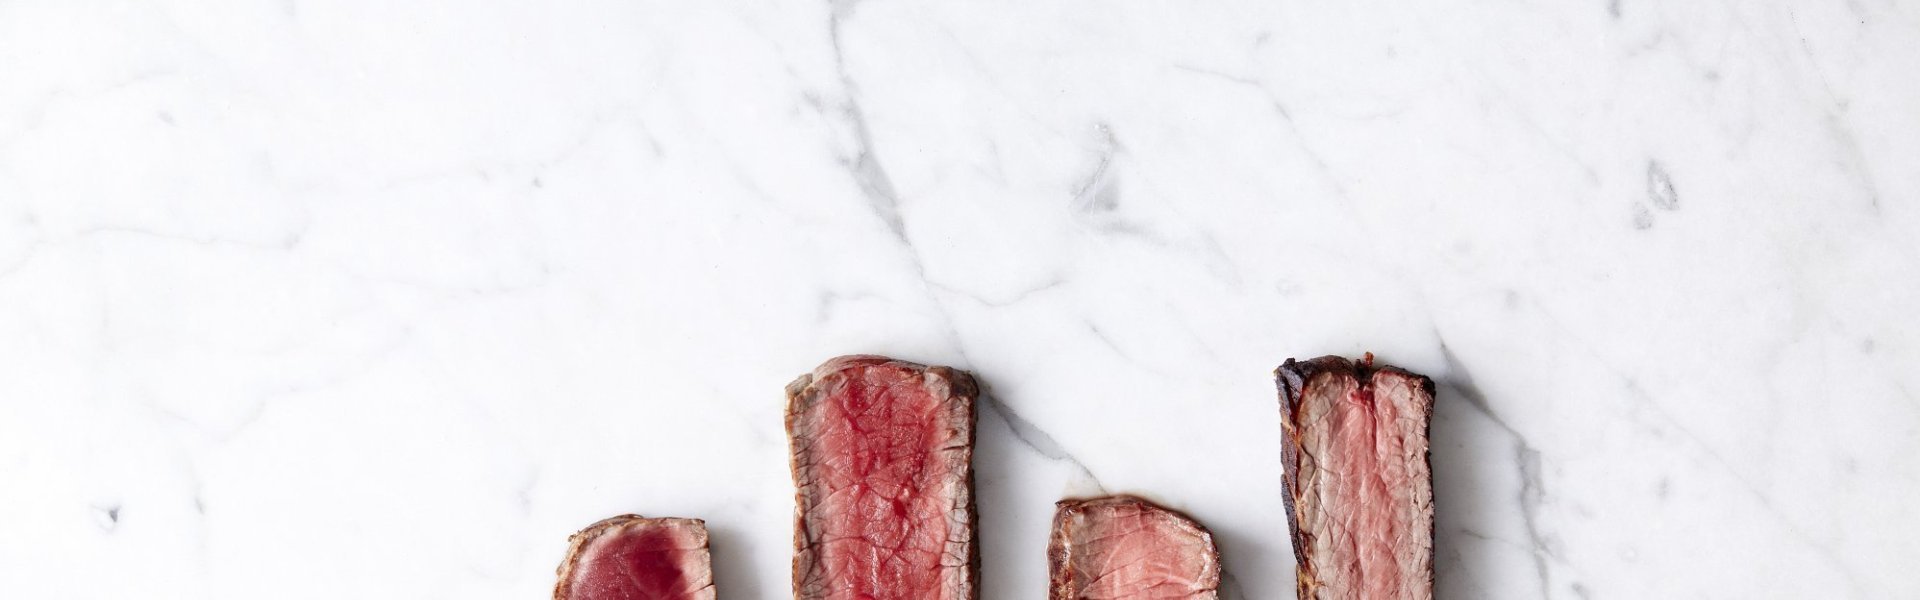 Reepjes steak liggen op een marmere ondergrond, de steak is te zien in zijn 4 cuissons. Bleu, saignant, a point en bien cuit.